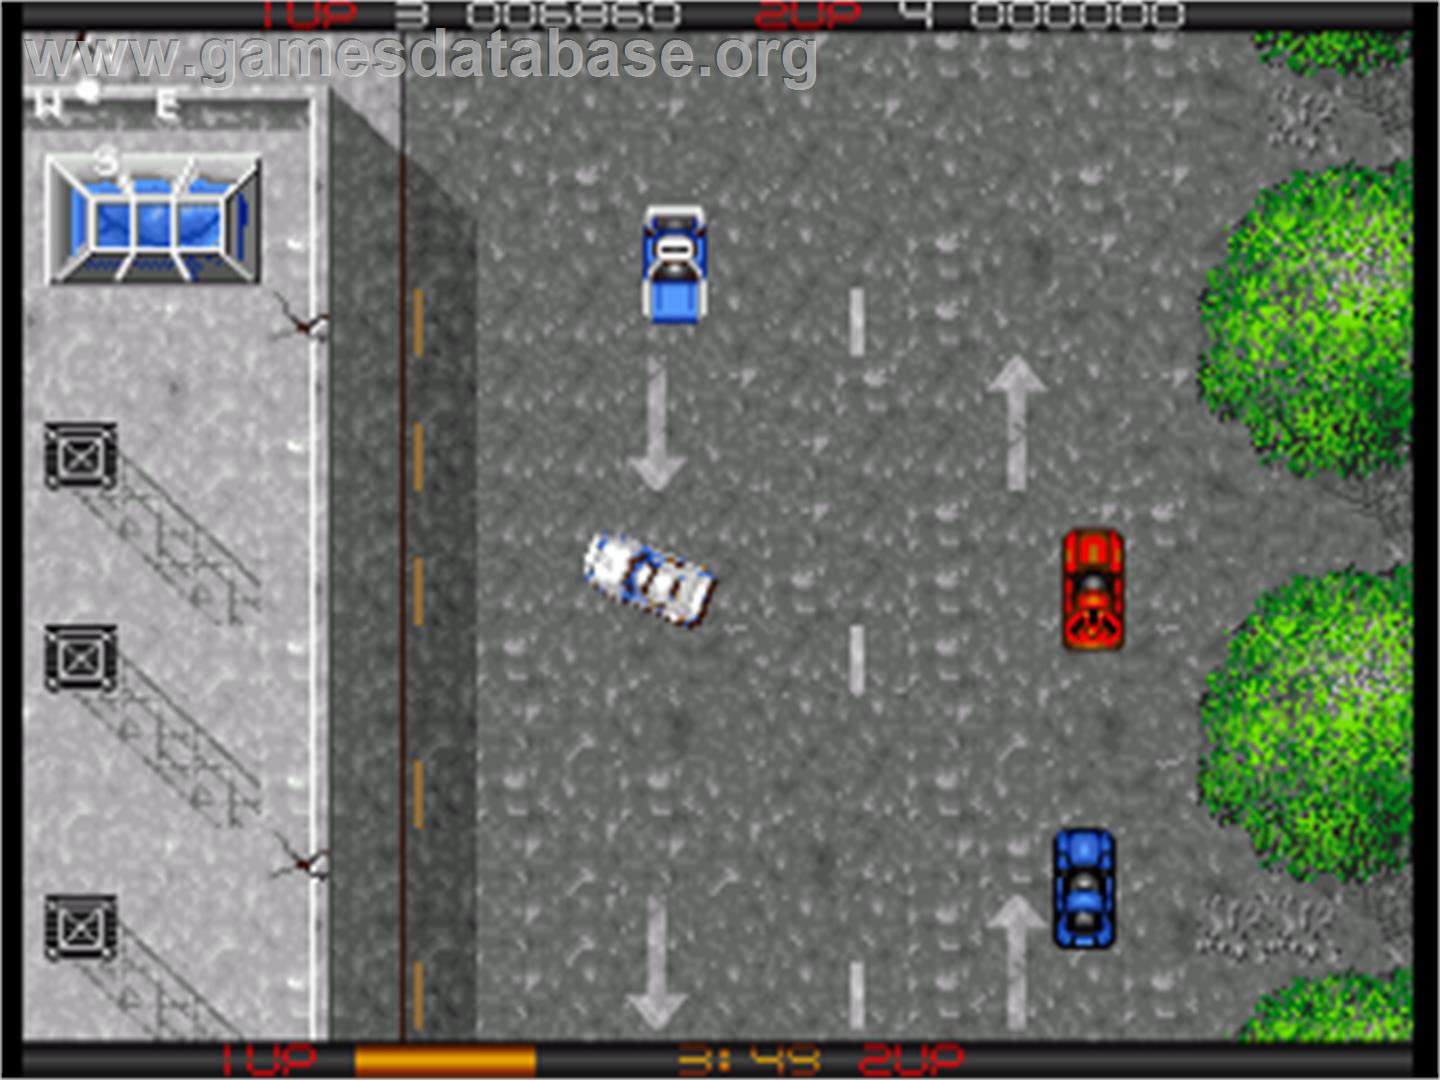 Miami Chase - Commodore Amiga - Artwork - In Game